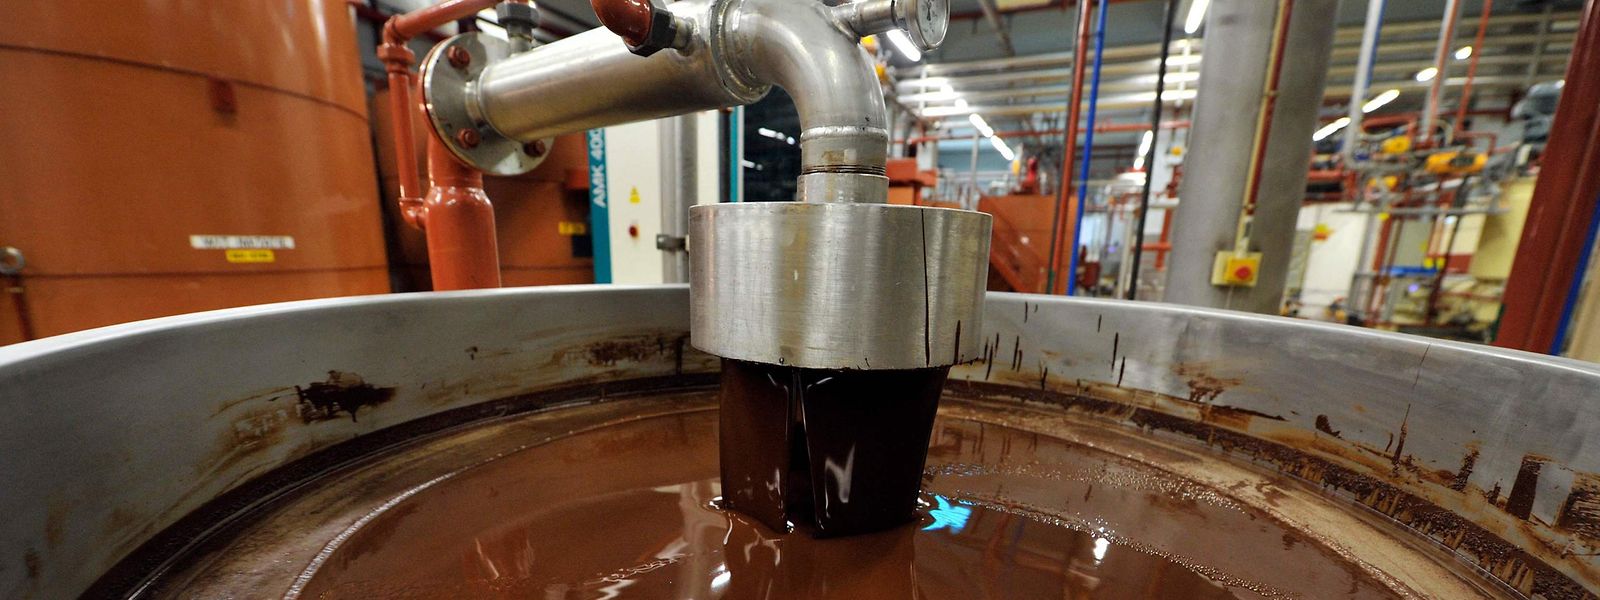 Barry Callebaut a fermé toutes ses lignes de production de chocolat à Wieze, par mesure de précaution»